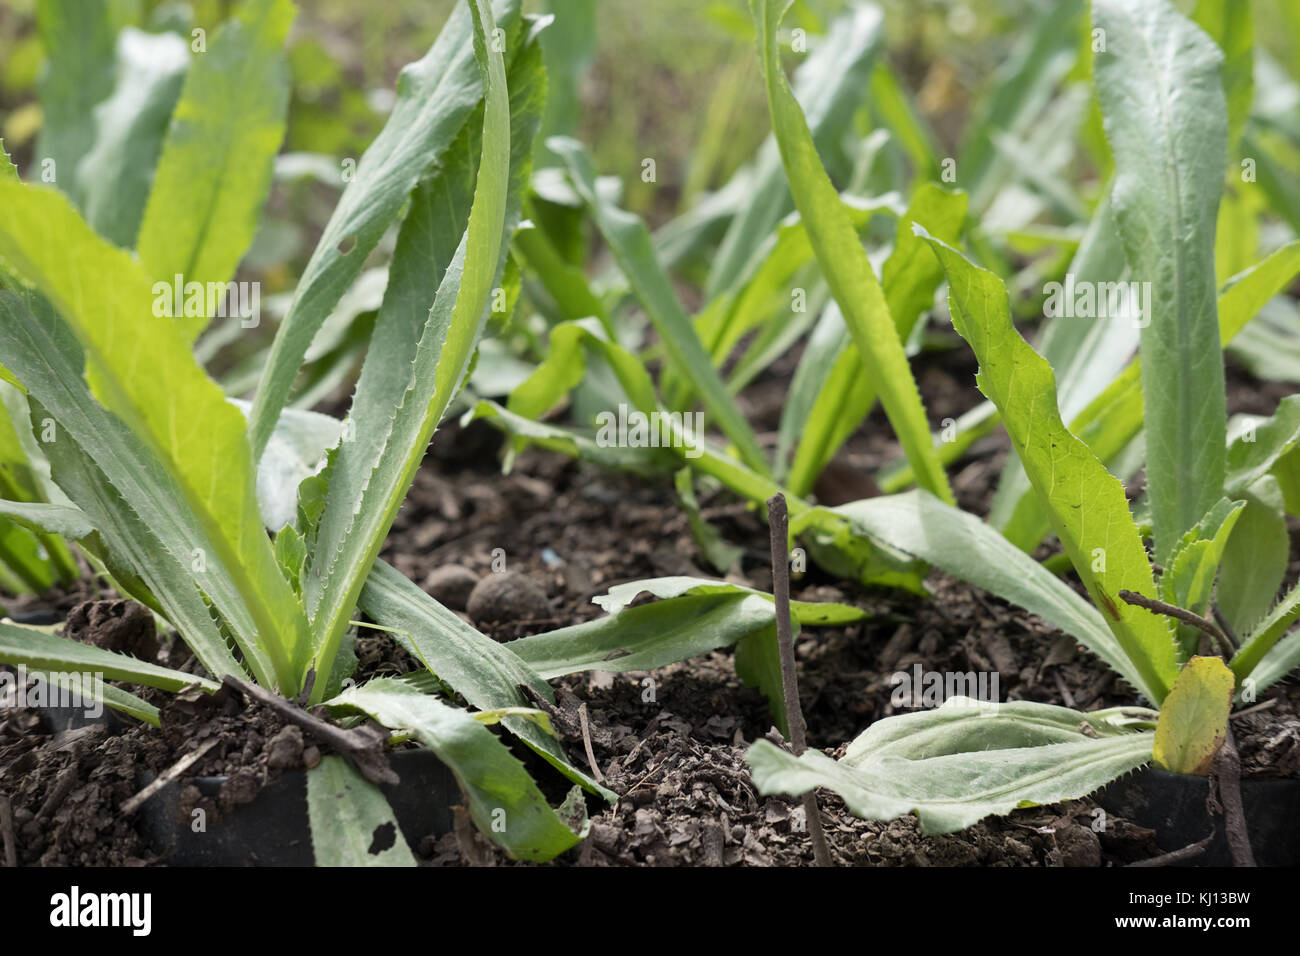 Fresca culantro organico, a denti di sega di coriandolo, prezzemolo in crescita su terreno in fattoria Foto Stock